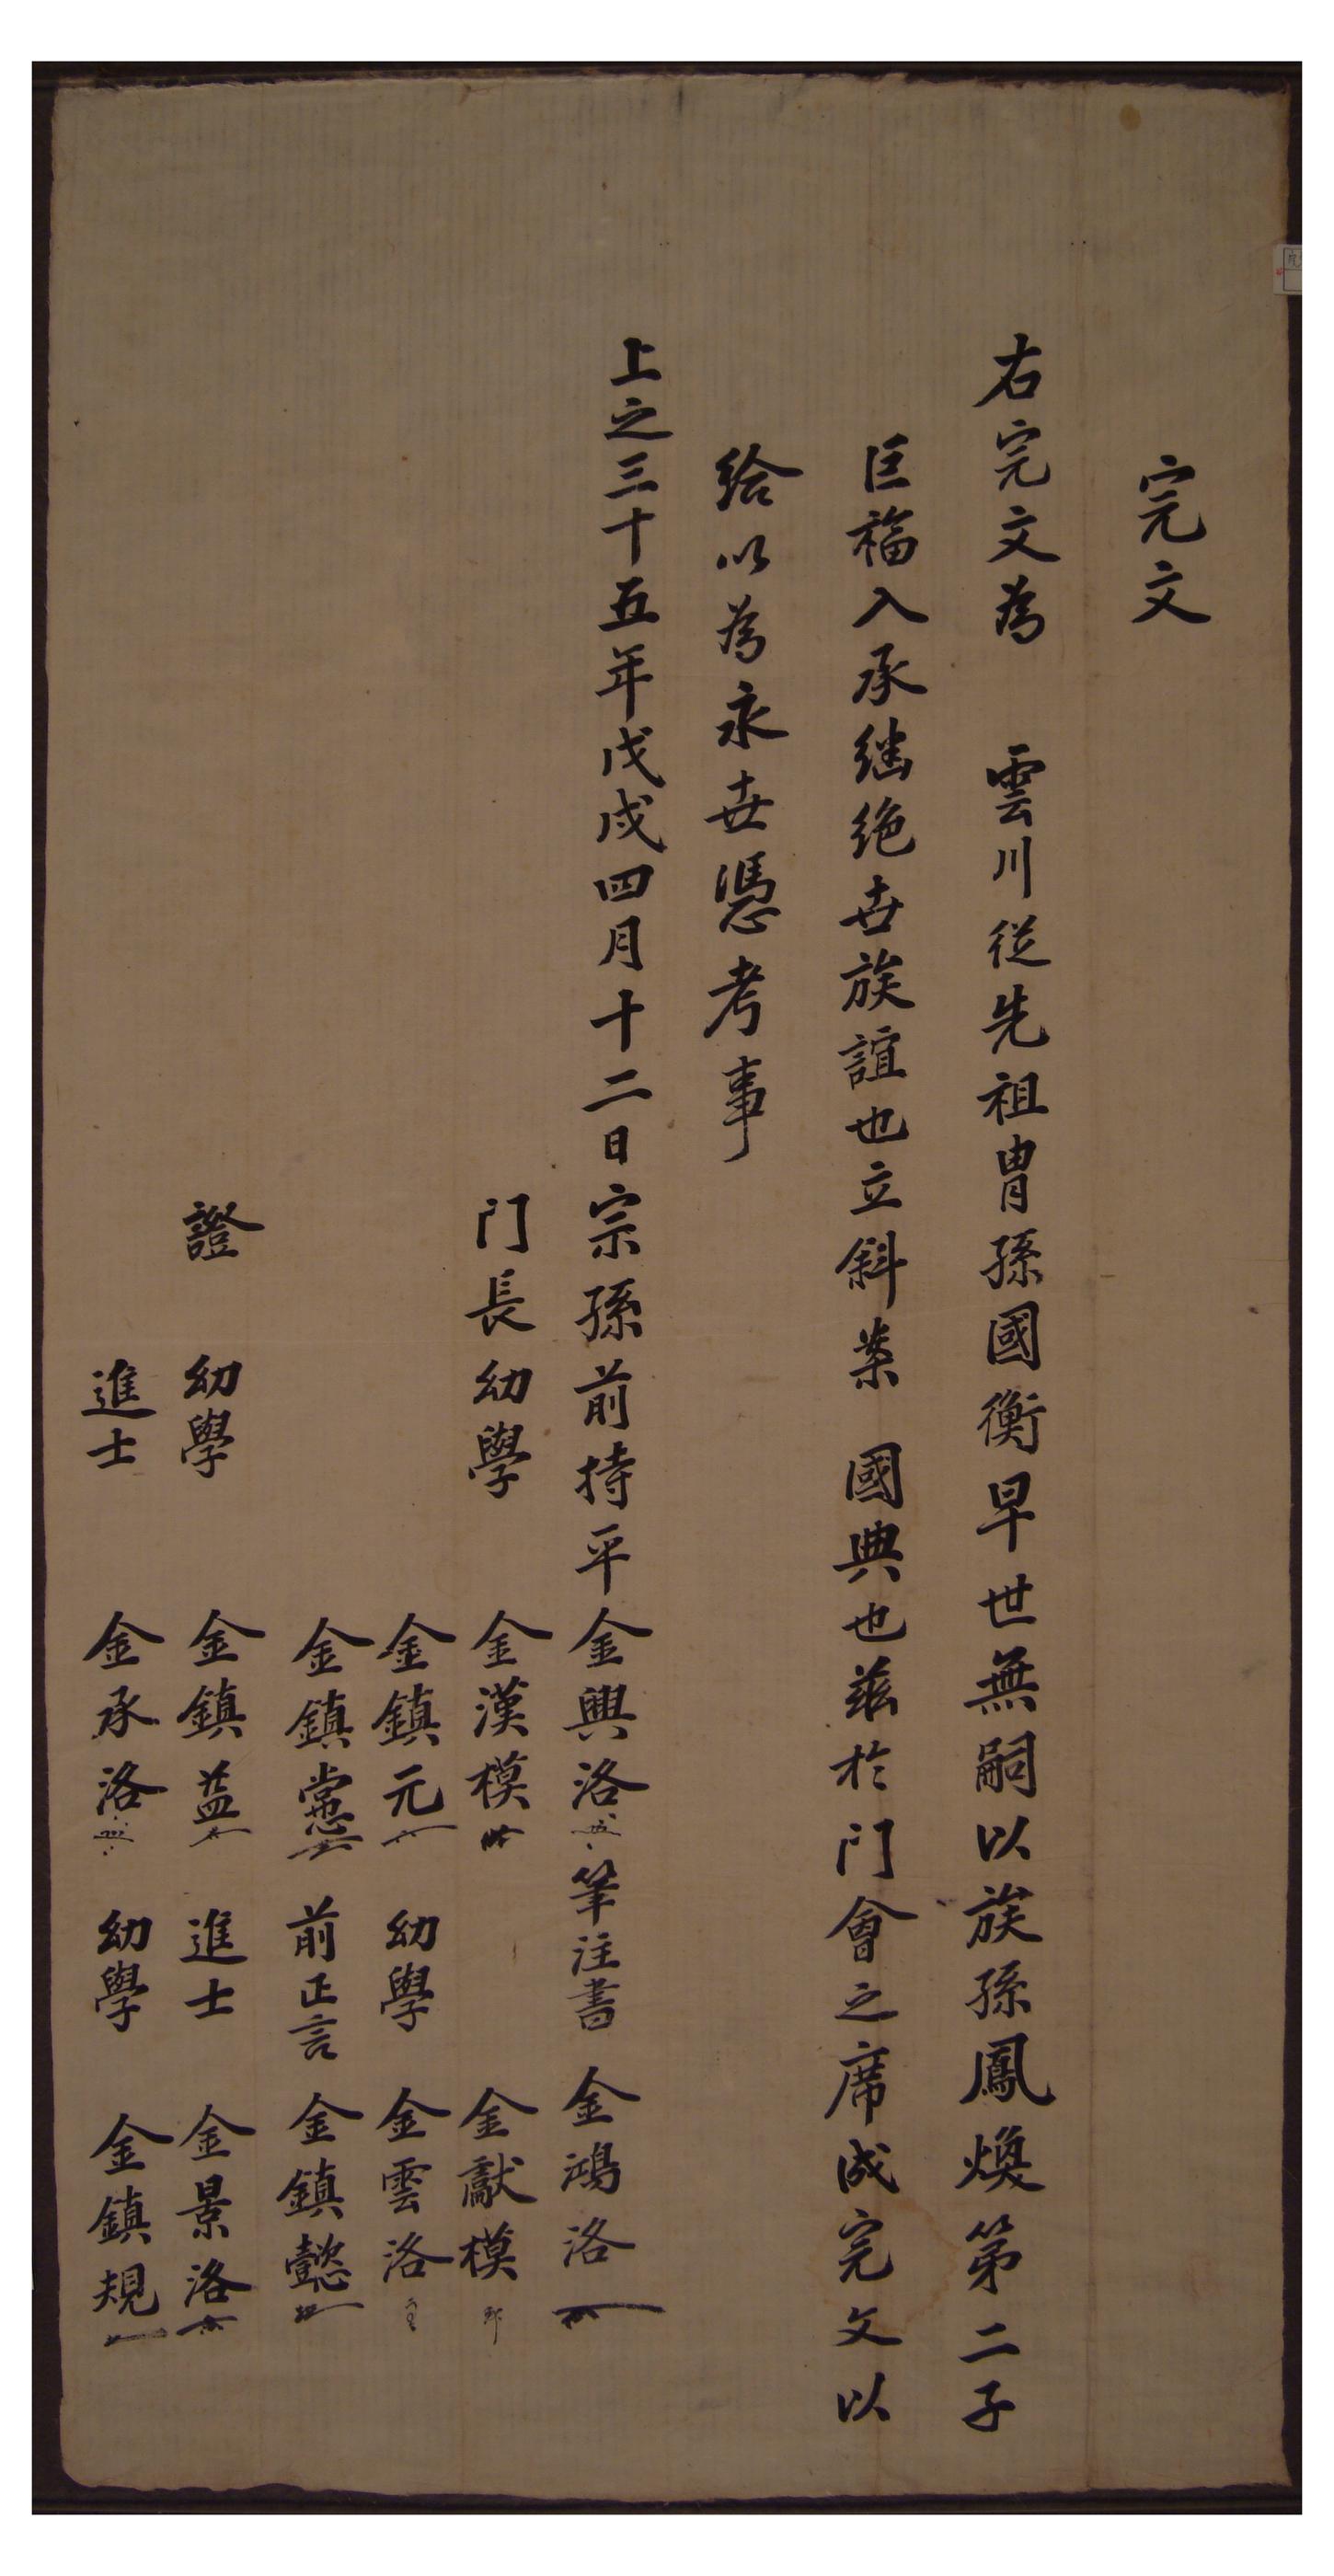 1898년 김거복이 김국형의 양자로 들어간 사실을 증명하기위해 문중에서 김봉환에게 작성해준 완문